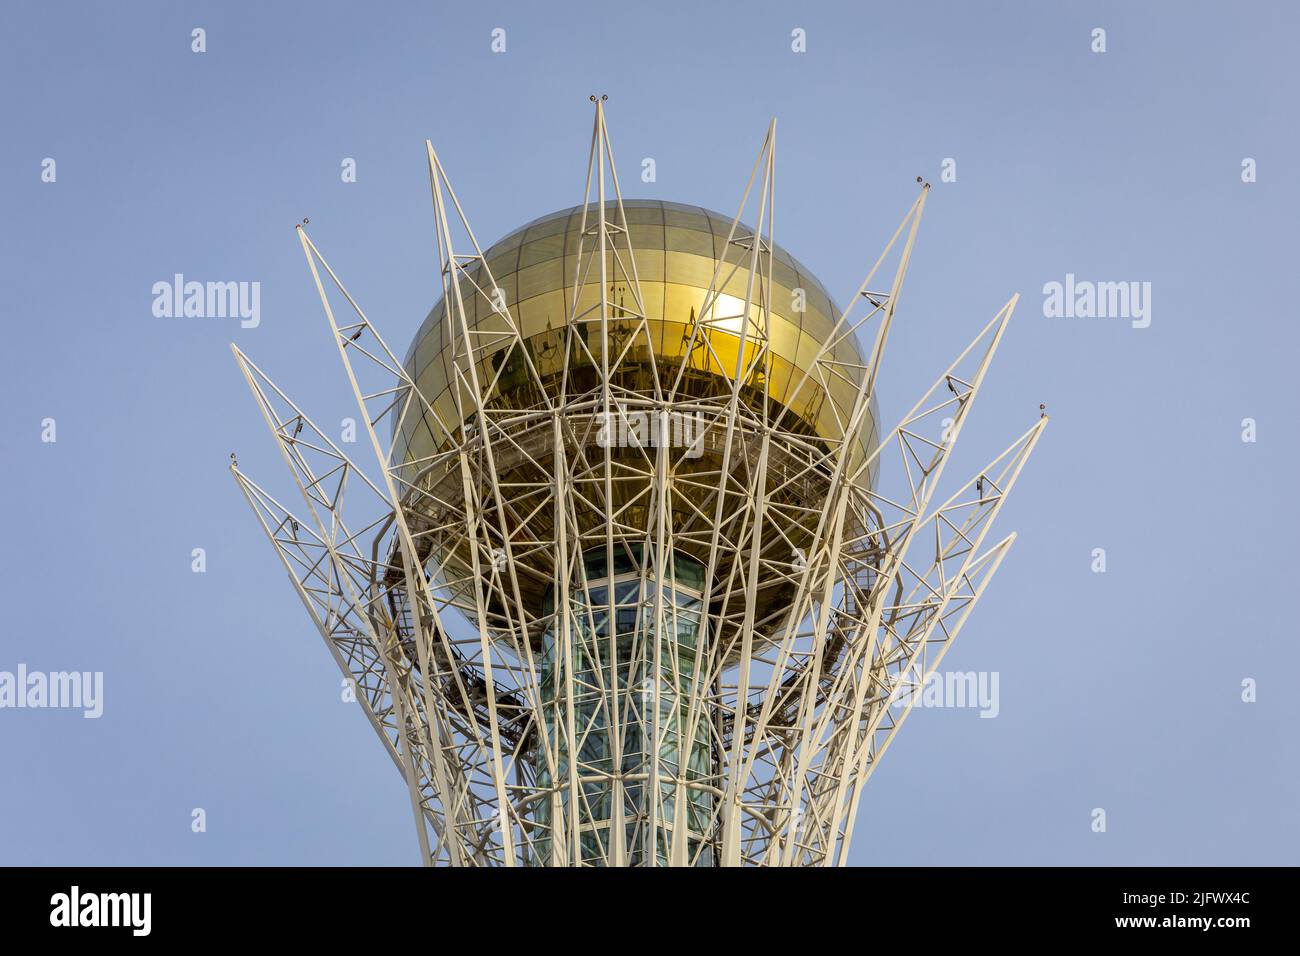 Nur Sultan (Astana), Kazakhstan, 11.11.21. Baiterek (Bayterek) Tower top, national landmark of Nur Sultan with golden sphere symbolizing golden egg ag Stock Photo